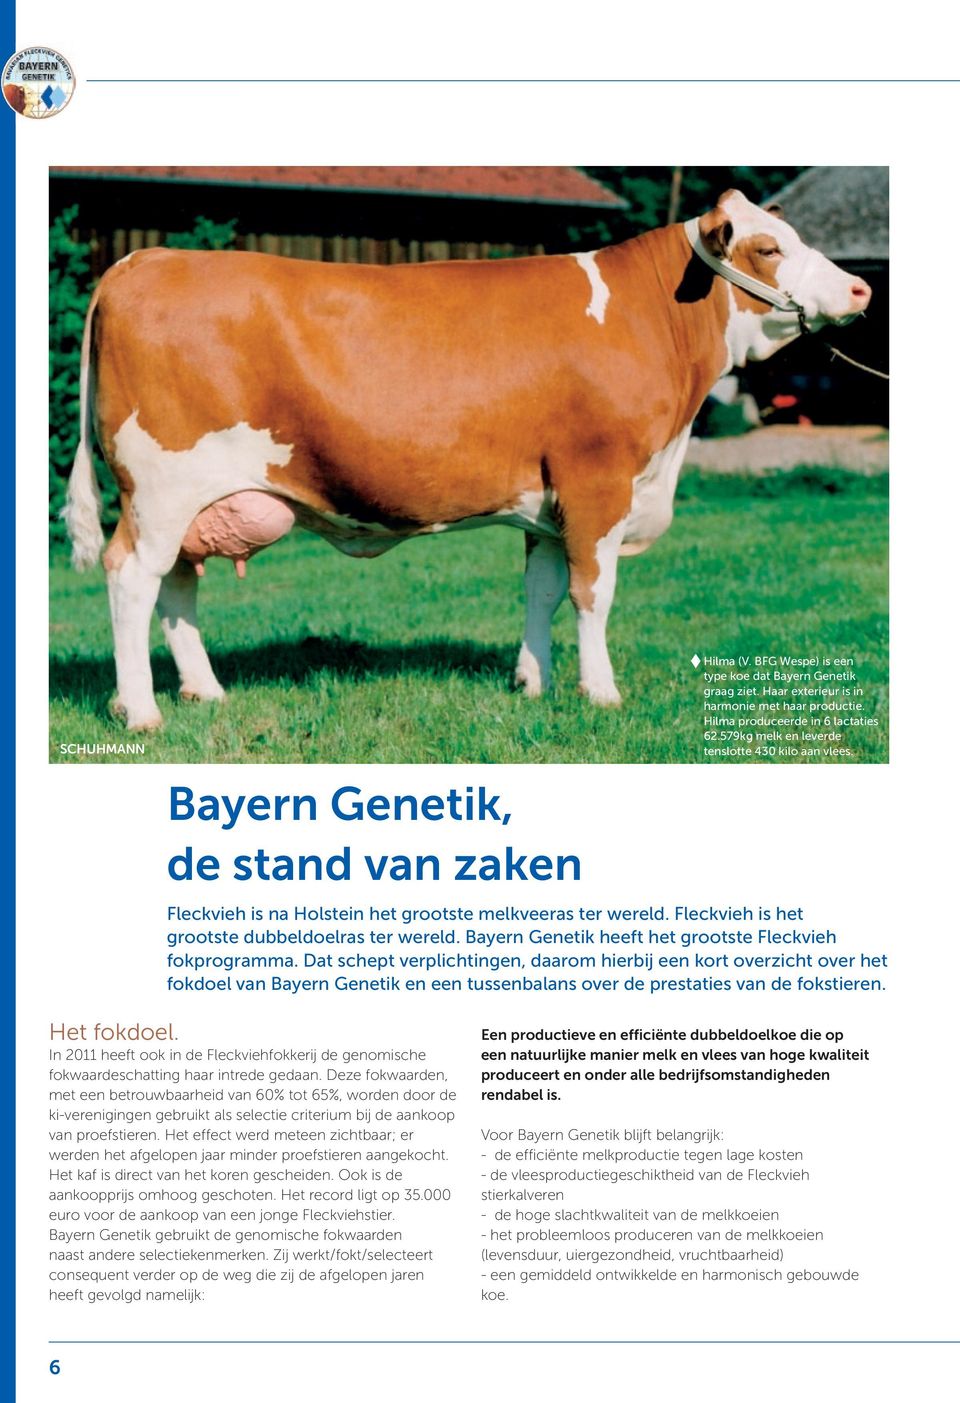 Bayern Genetik heeft het grootste Fleckvieh fokprogramma.